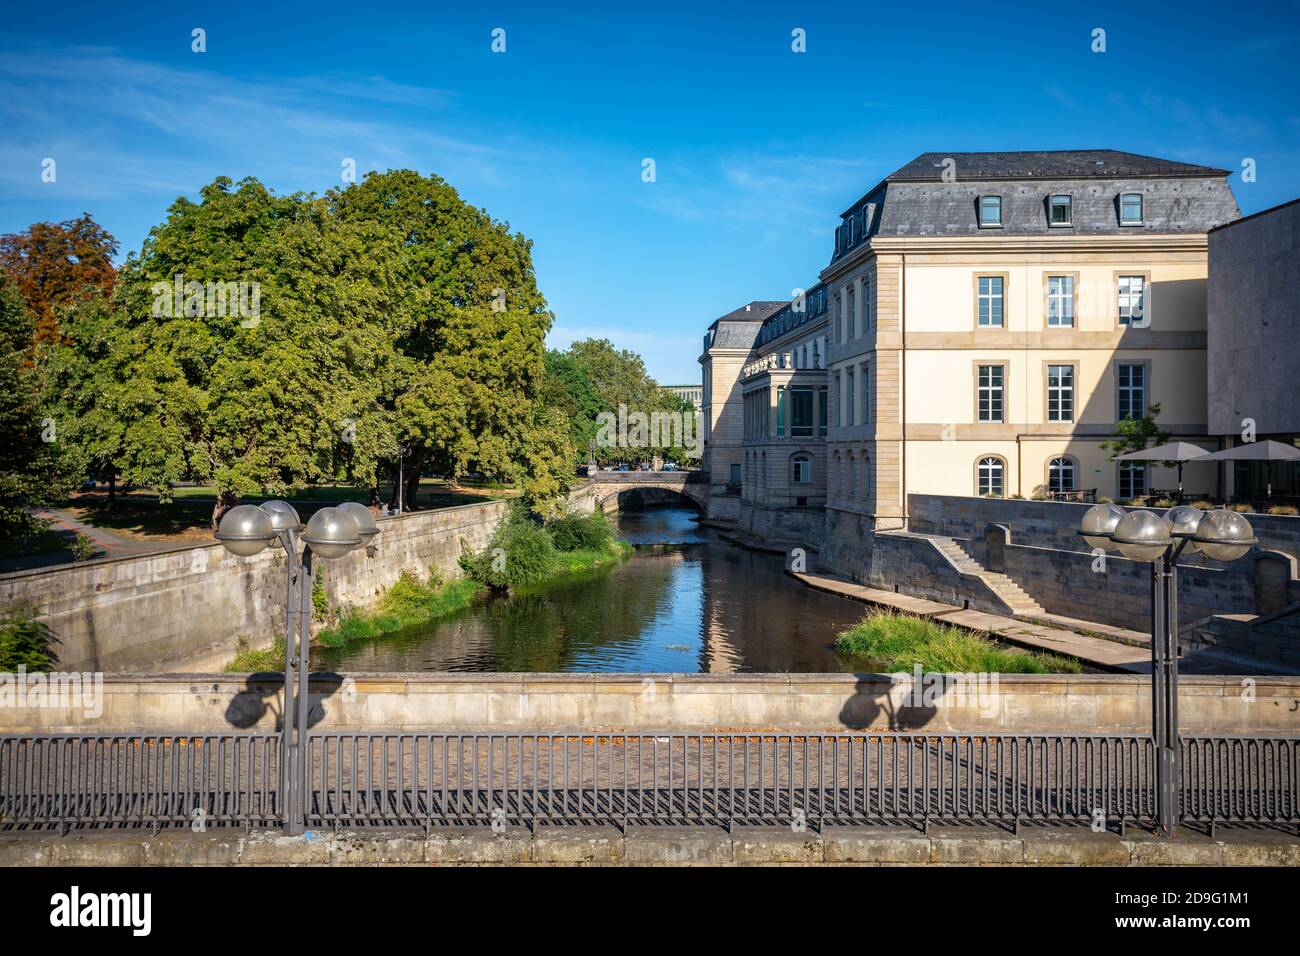 Leine Fluss in Hannover, Deutschland Stockfotografie - Alamy